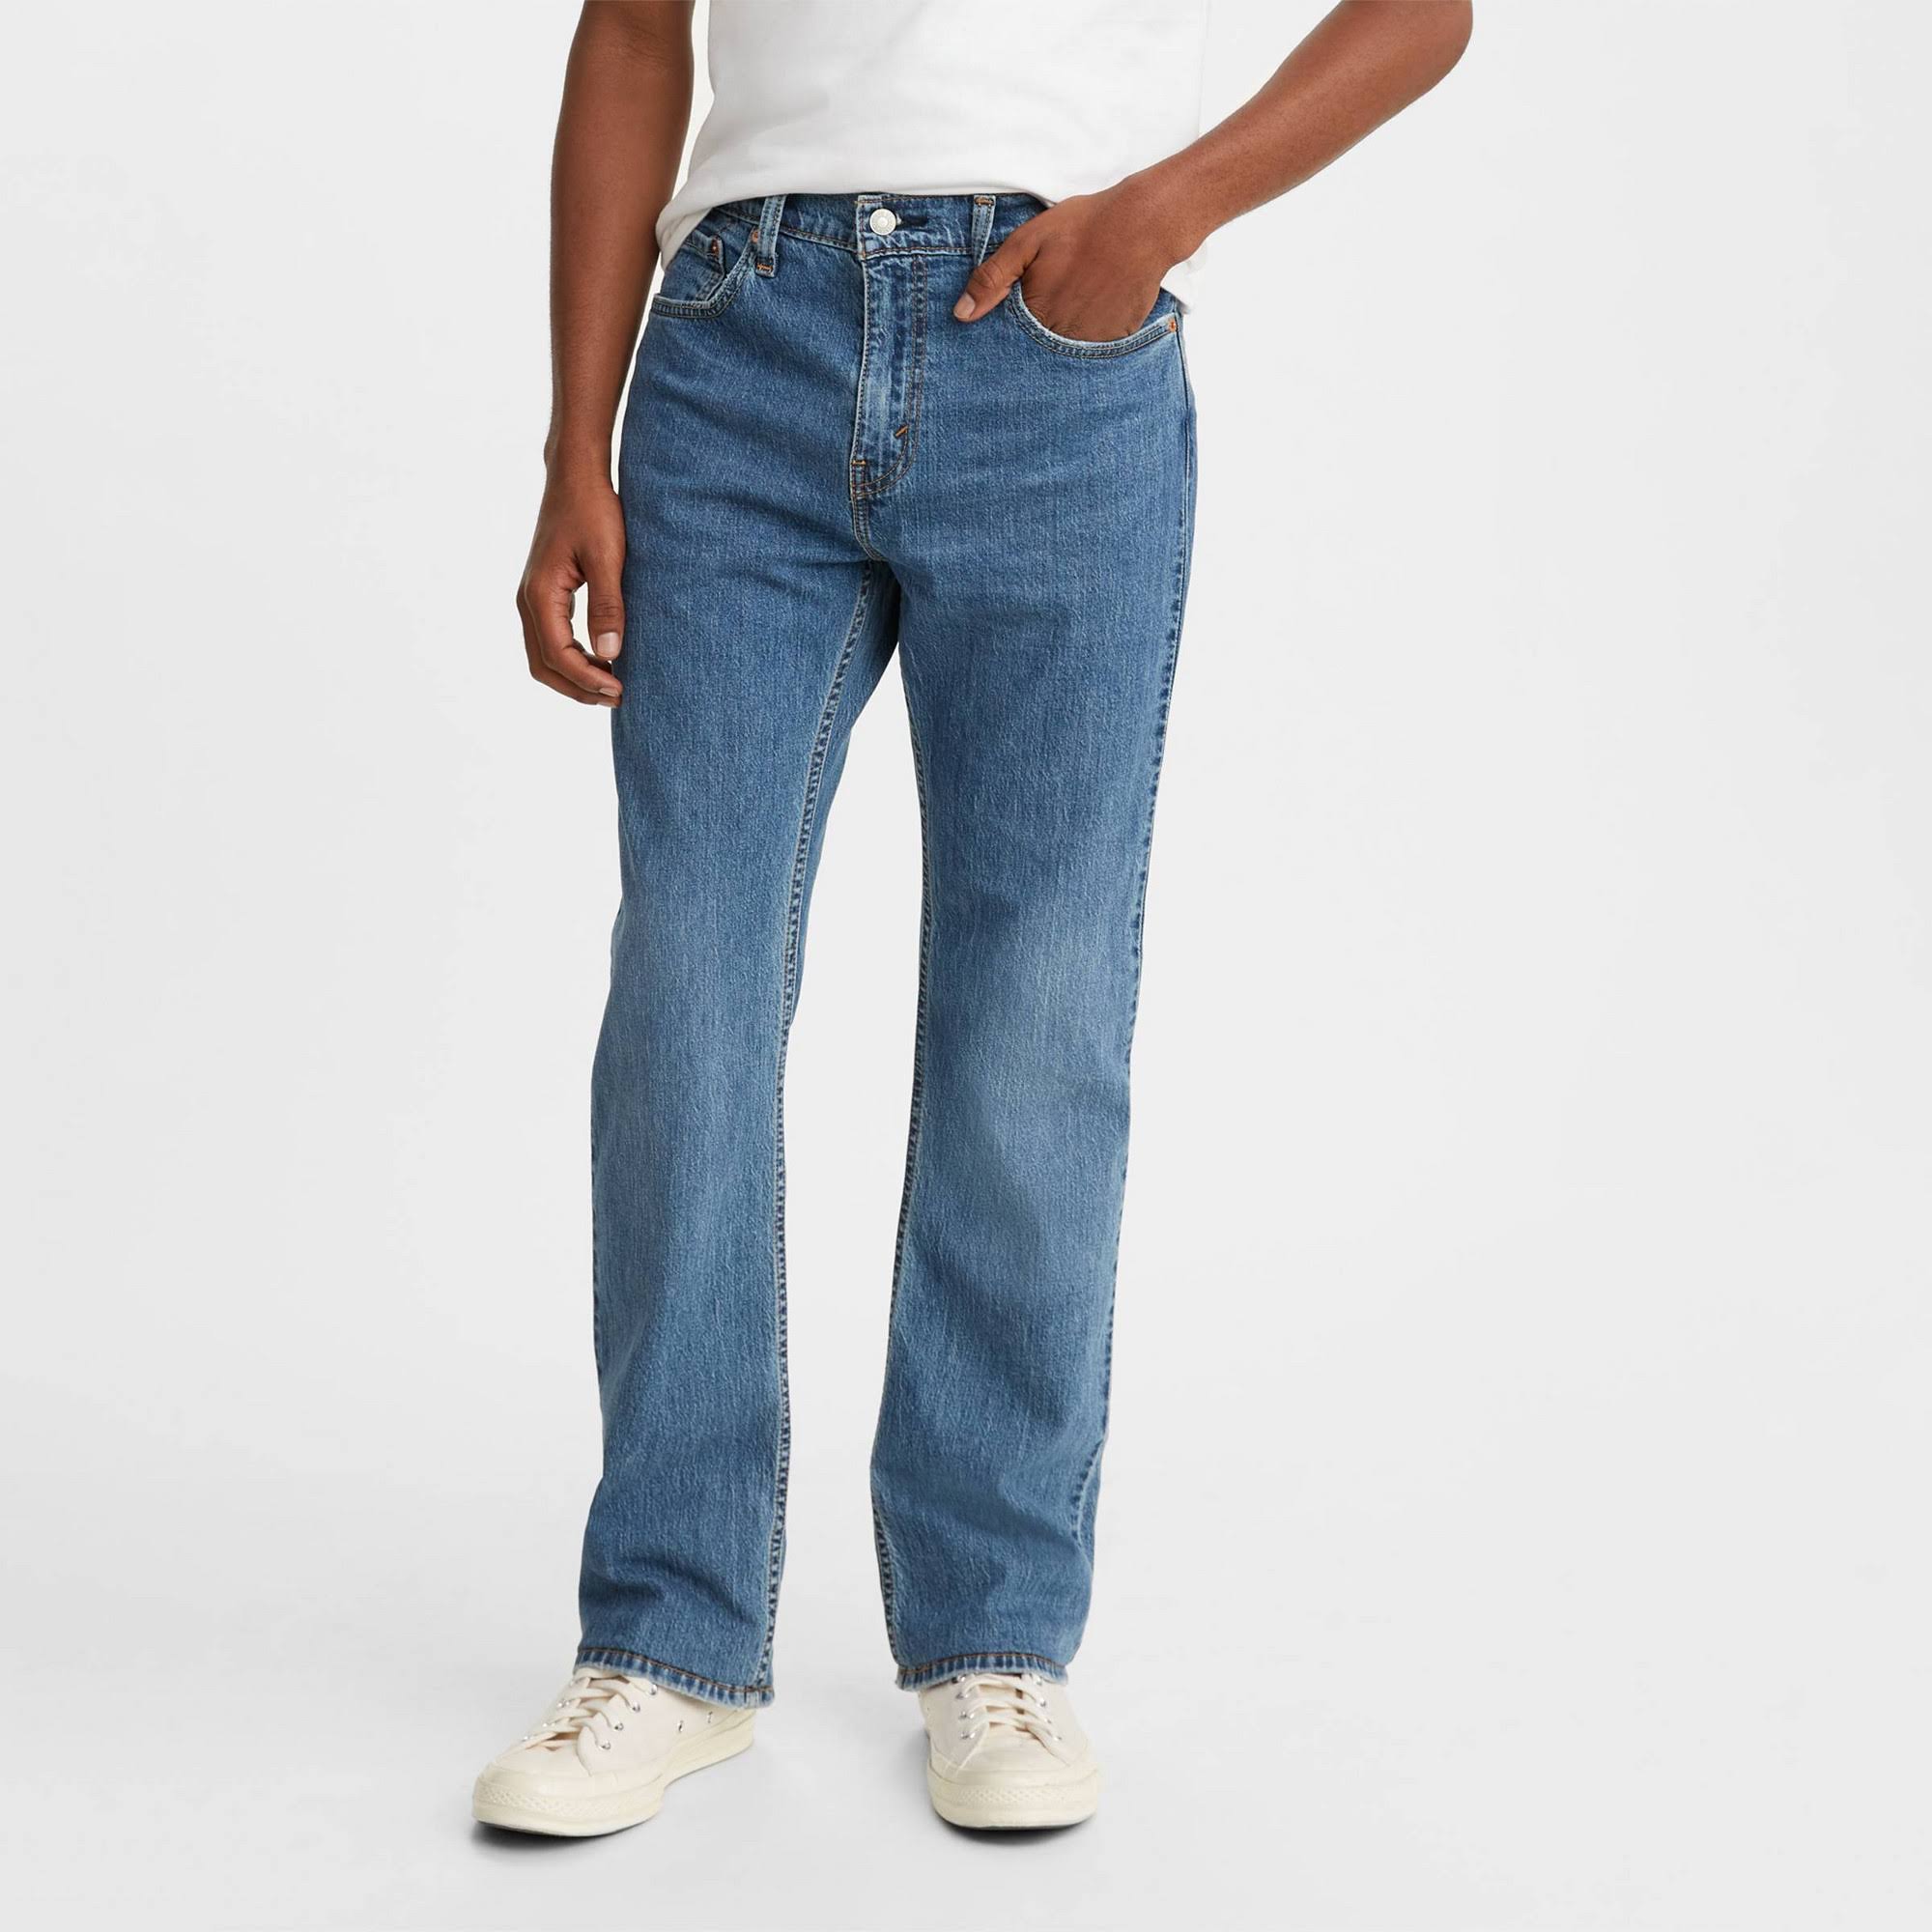 Levi's Men's 527 Slim Bootcut Jeans - Blue 32x30 - Nvilo